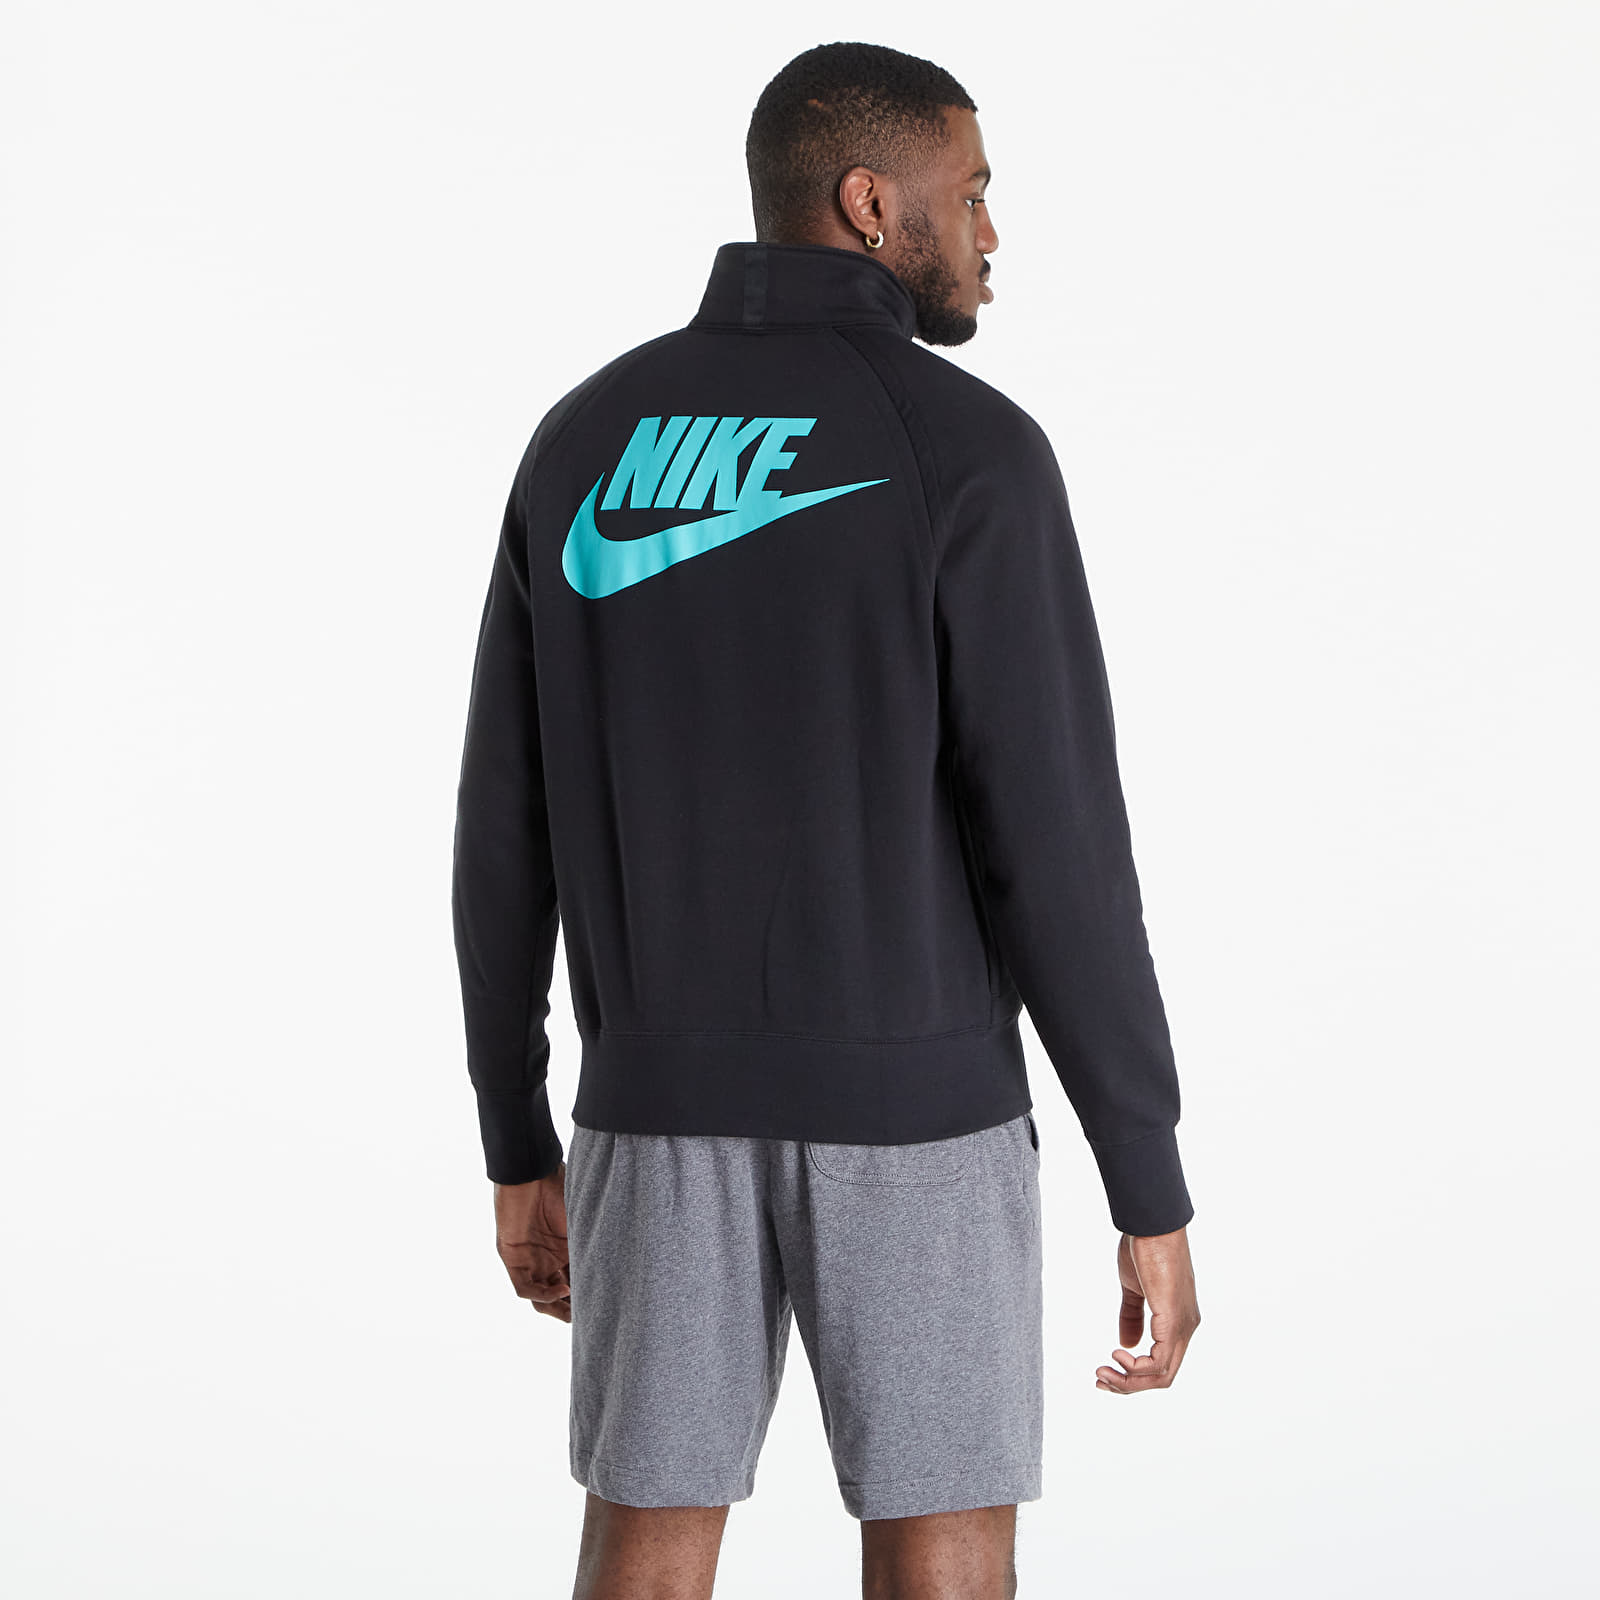 Φούτερ Nike Sportswear Hbr-S Long Sleeve Midlayer Top Black/ Washed Teal